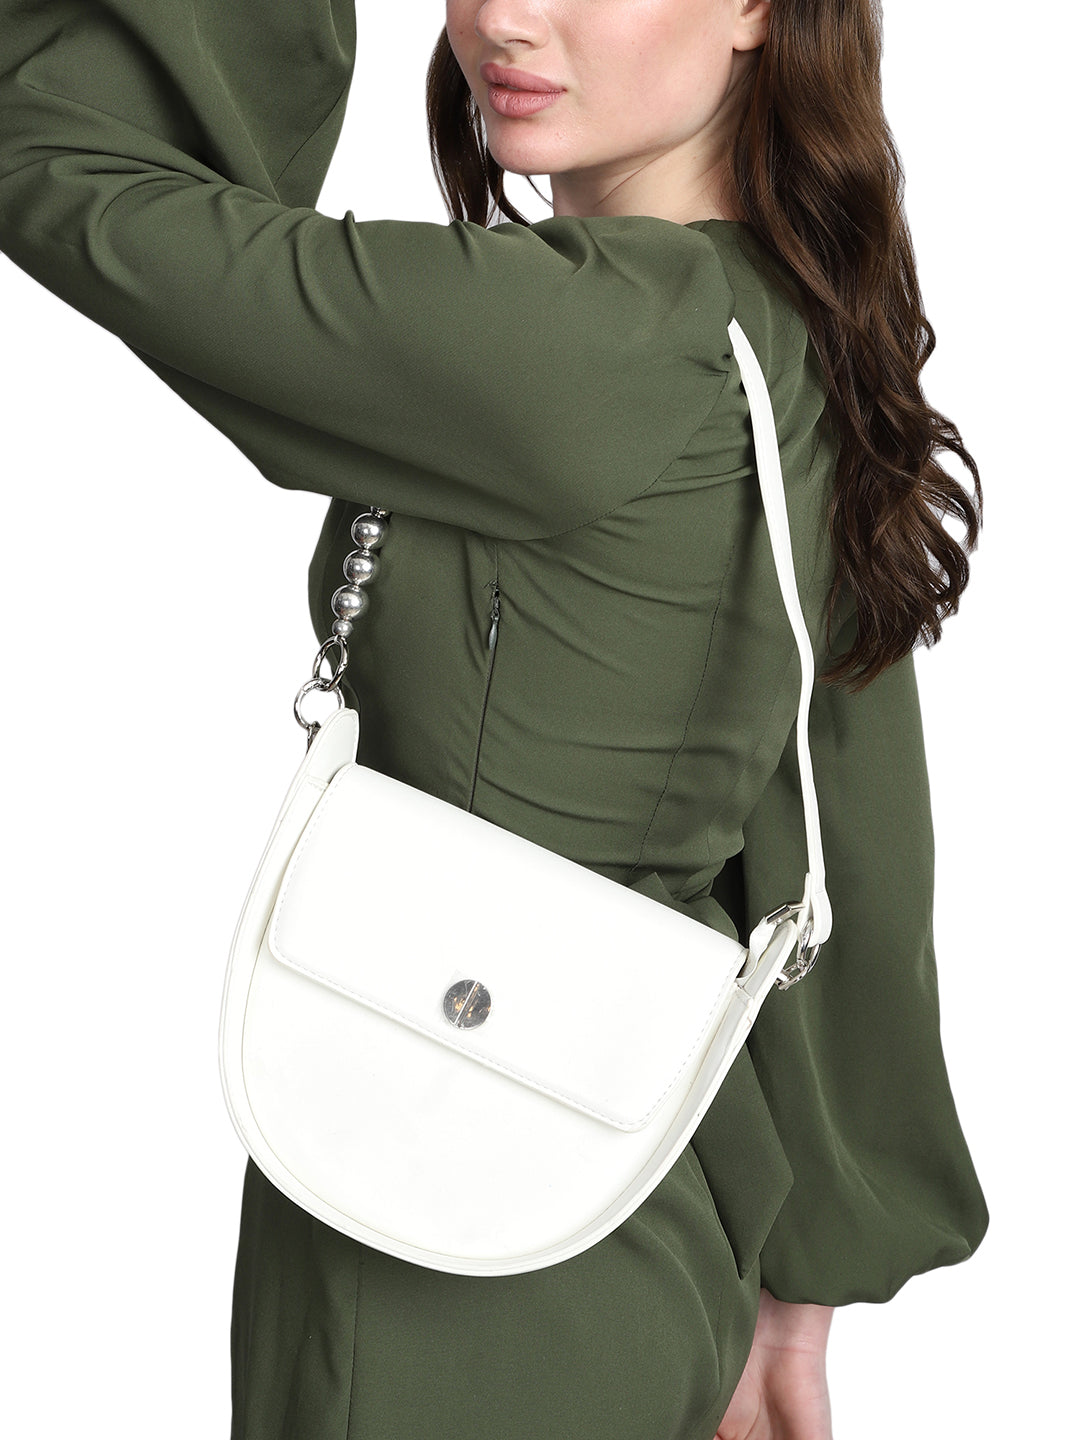 MINI WESST Women's White Handheld Bag